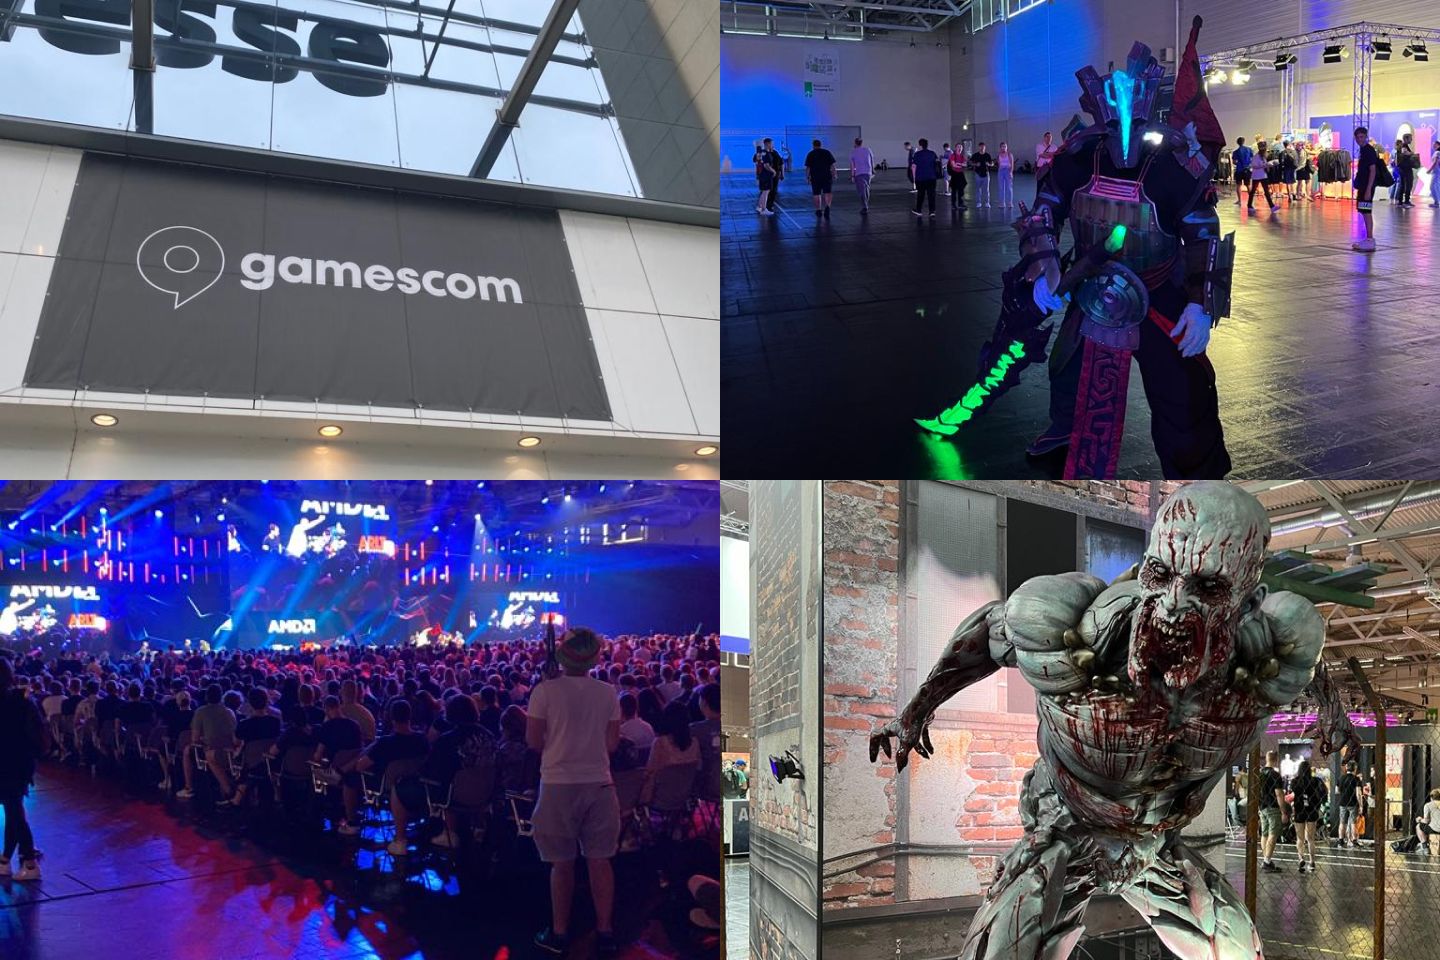 Vier Bilder von der Gamescom. Eins zeigt das Banner von Gamescom, das zweite ist ein Costplayer mit einem leuchtenden Schwert, das dritte zeigt eine Menschenmenge in einer Arena und das dritte zeigt eine Statue, welches ein Monster darstellt.